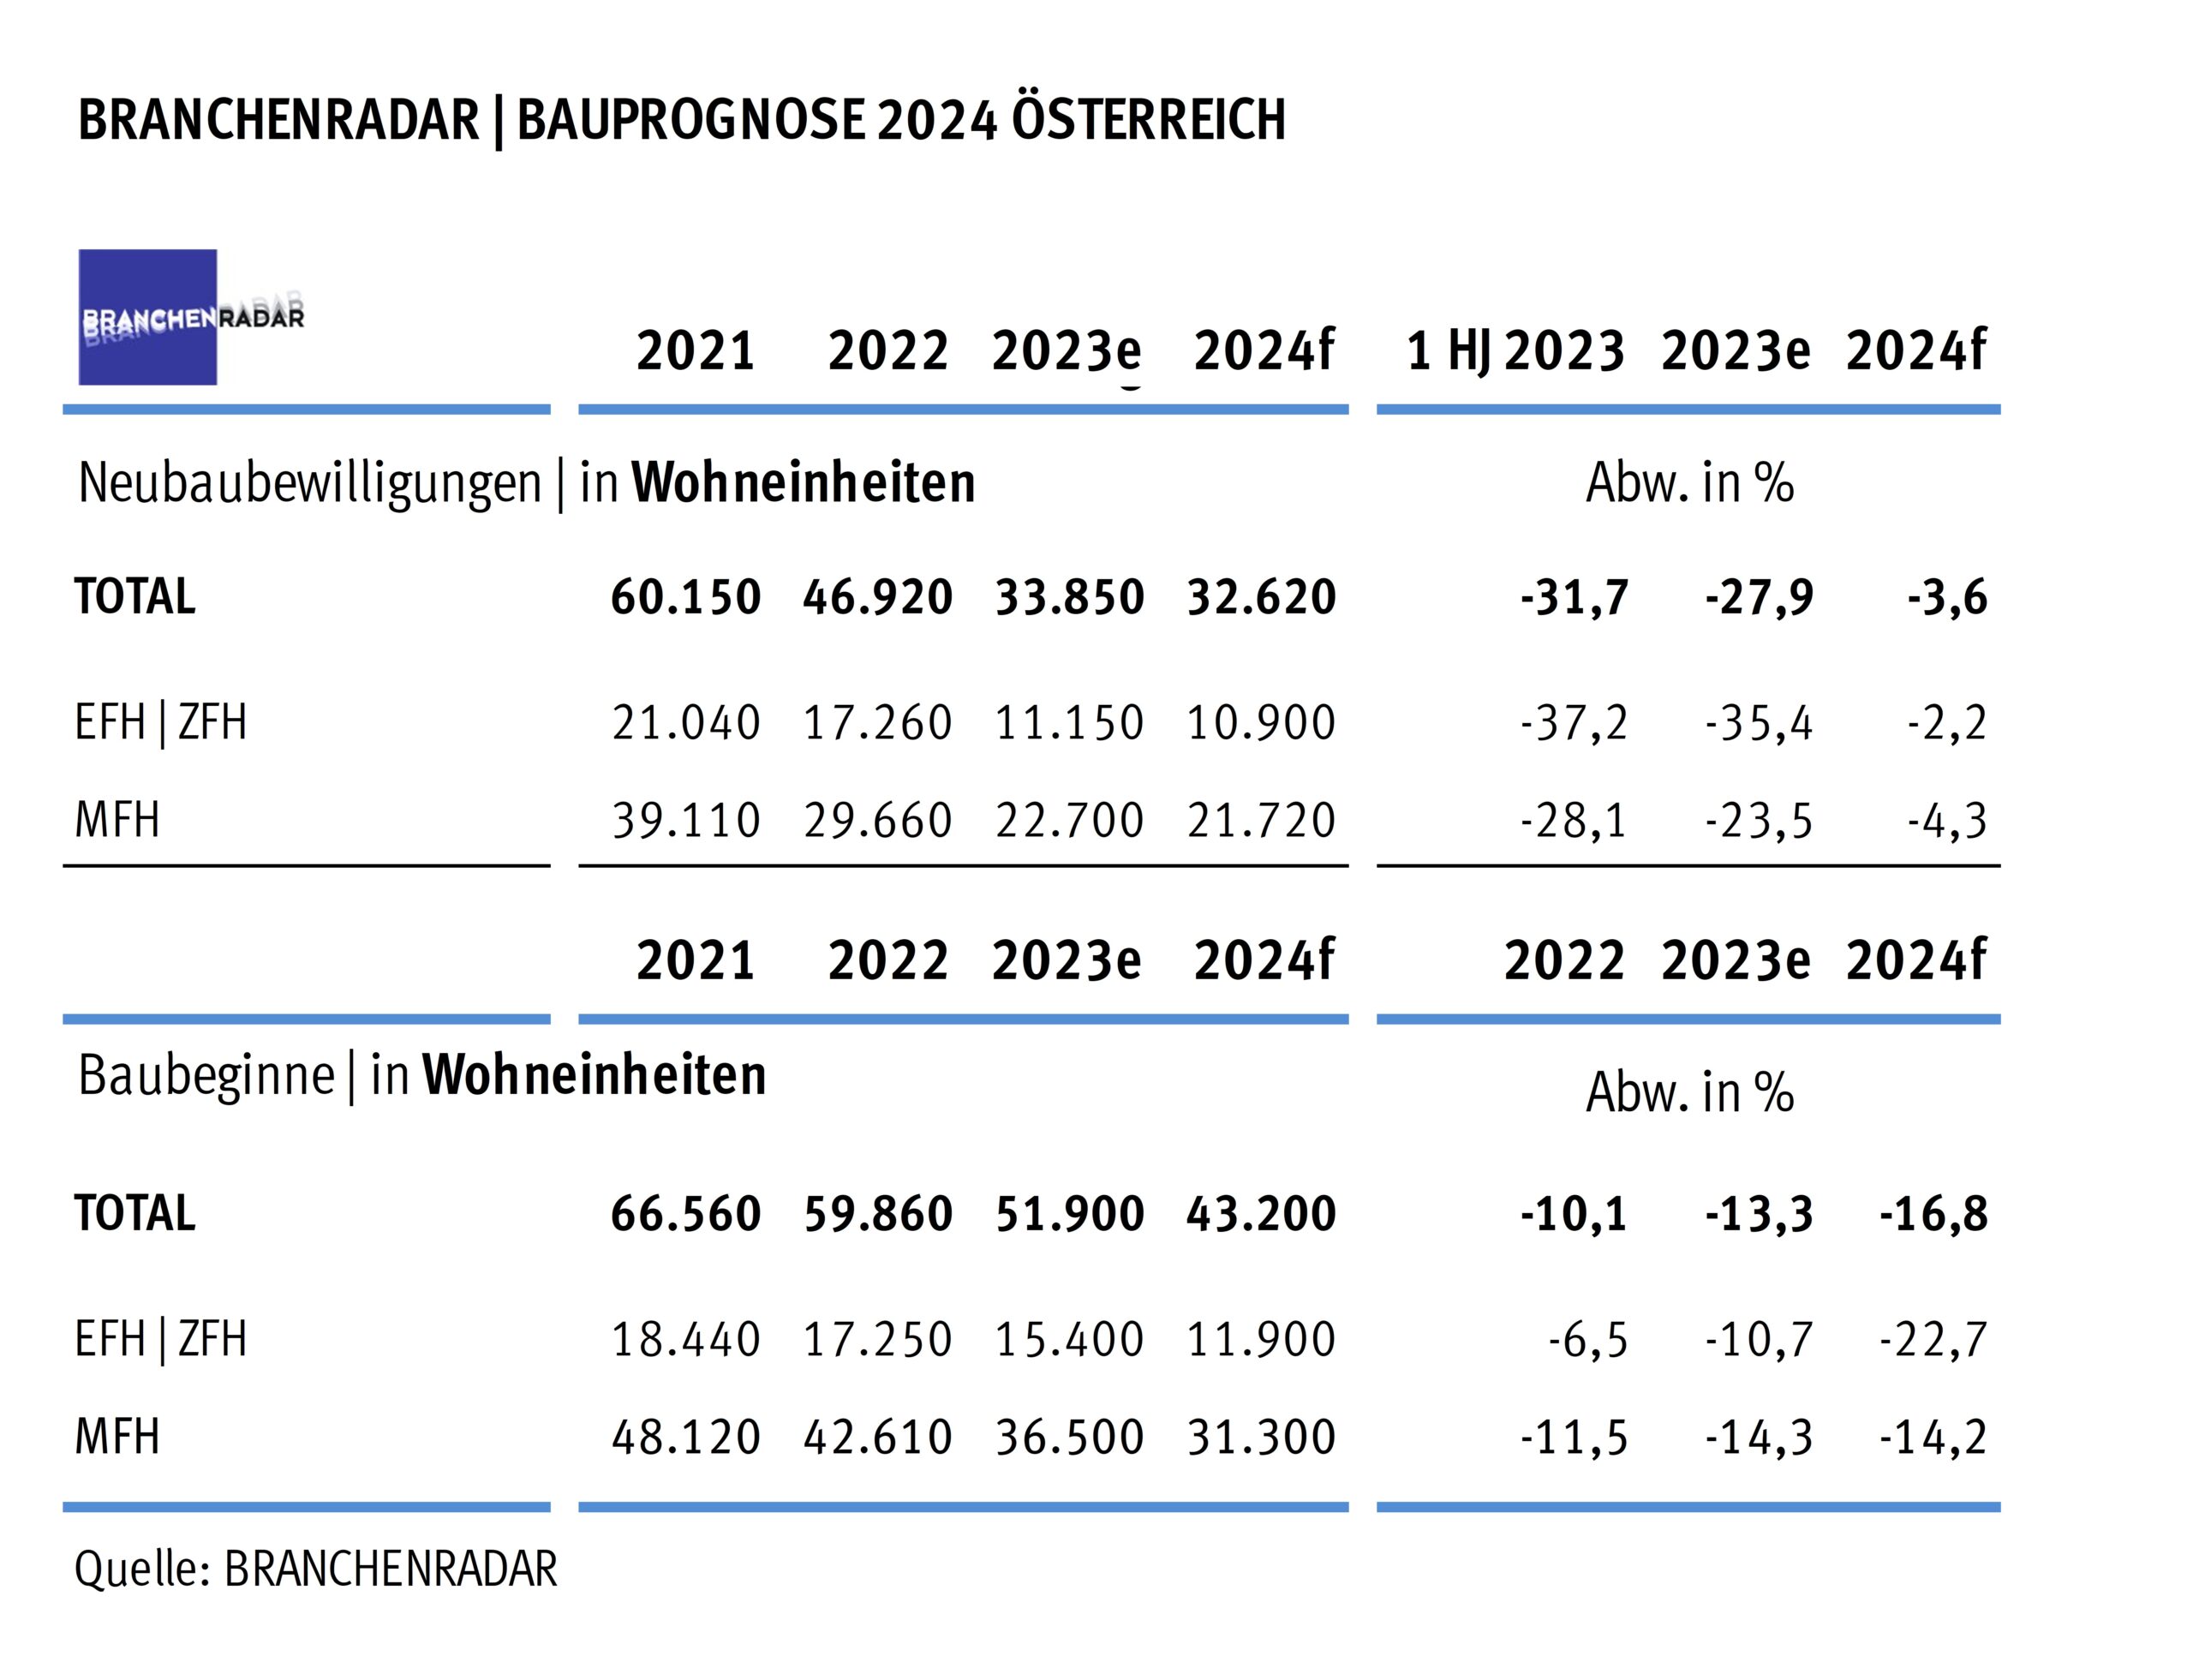 Bauprognose 2024 Österreich